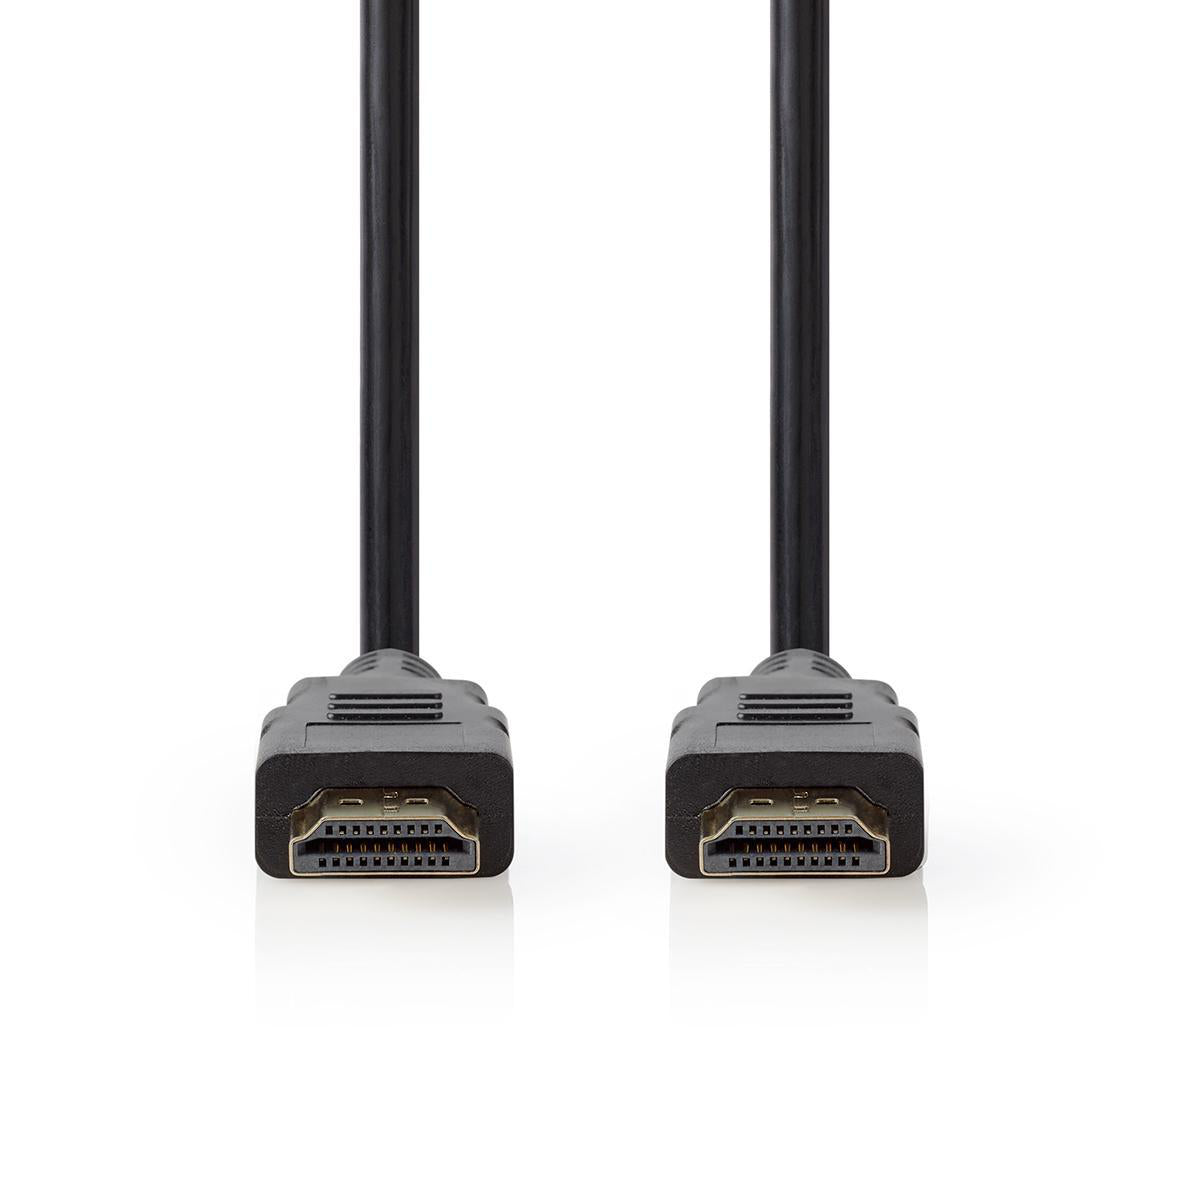 Premium High Speed HDMI ™ Kabel mit Ethernet | HDMI™ Stecker | HDMI™ Stecker | 4K@60Hz | 18 Gbps | 5.00 m | Rund | PVC | Schwarz | Plastikbeutel